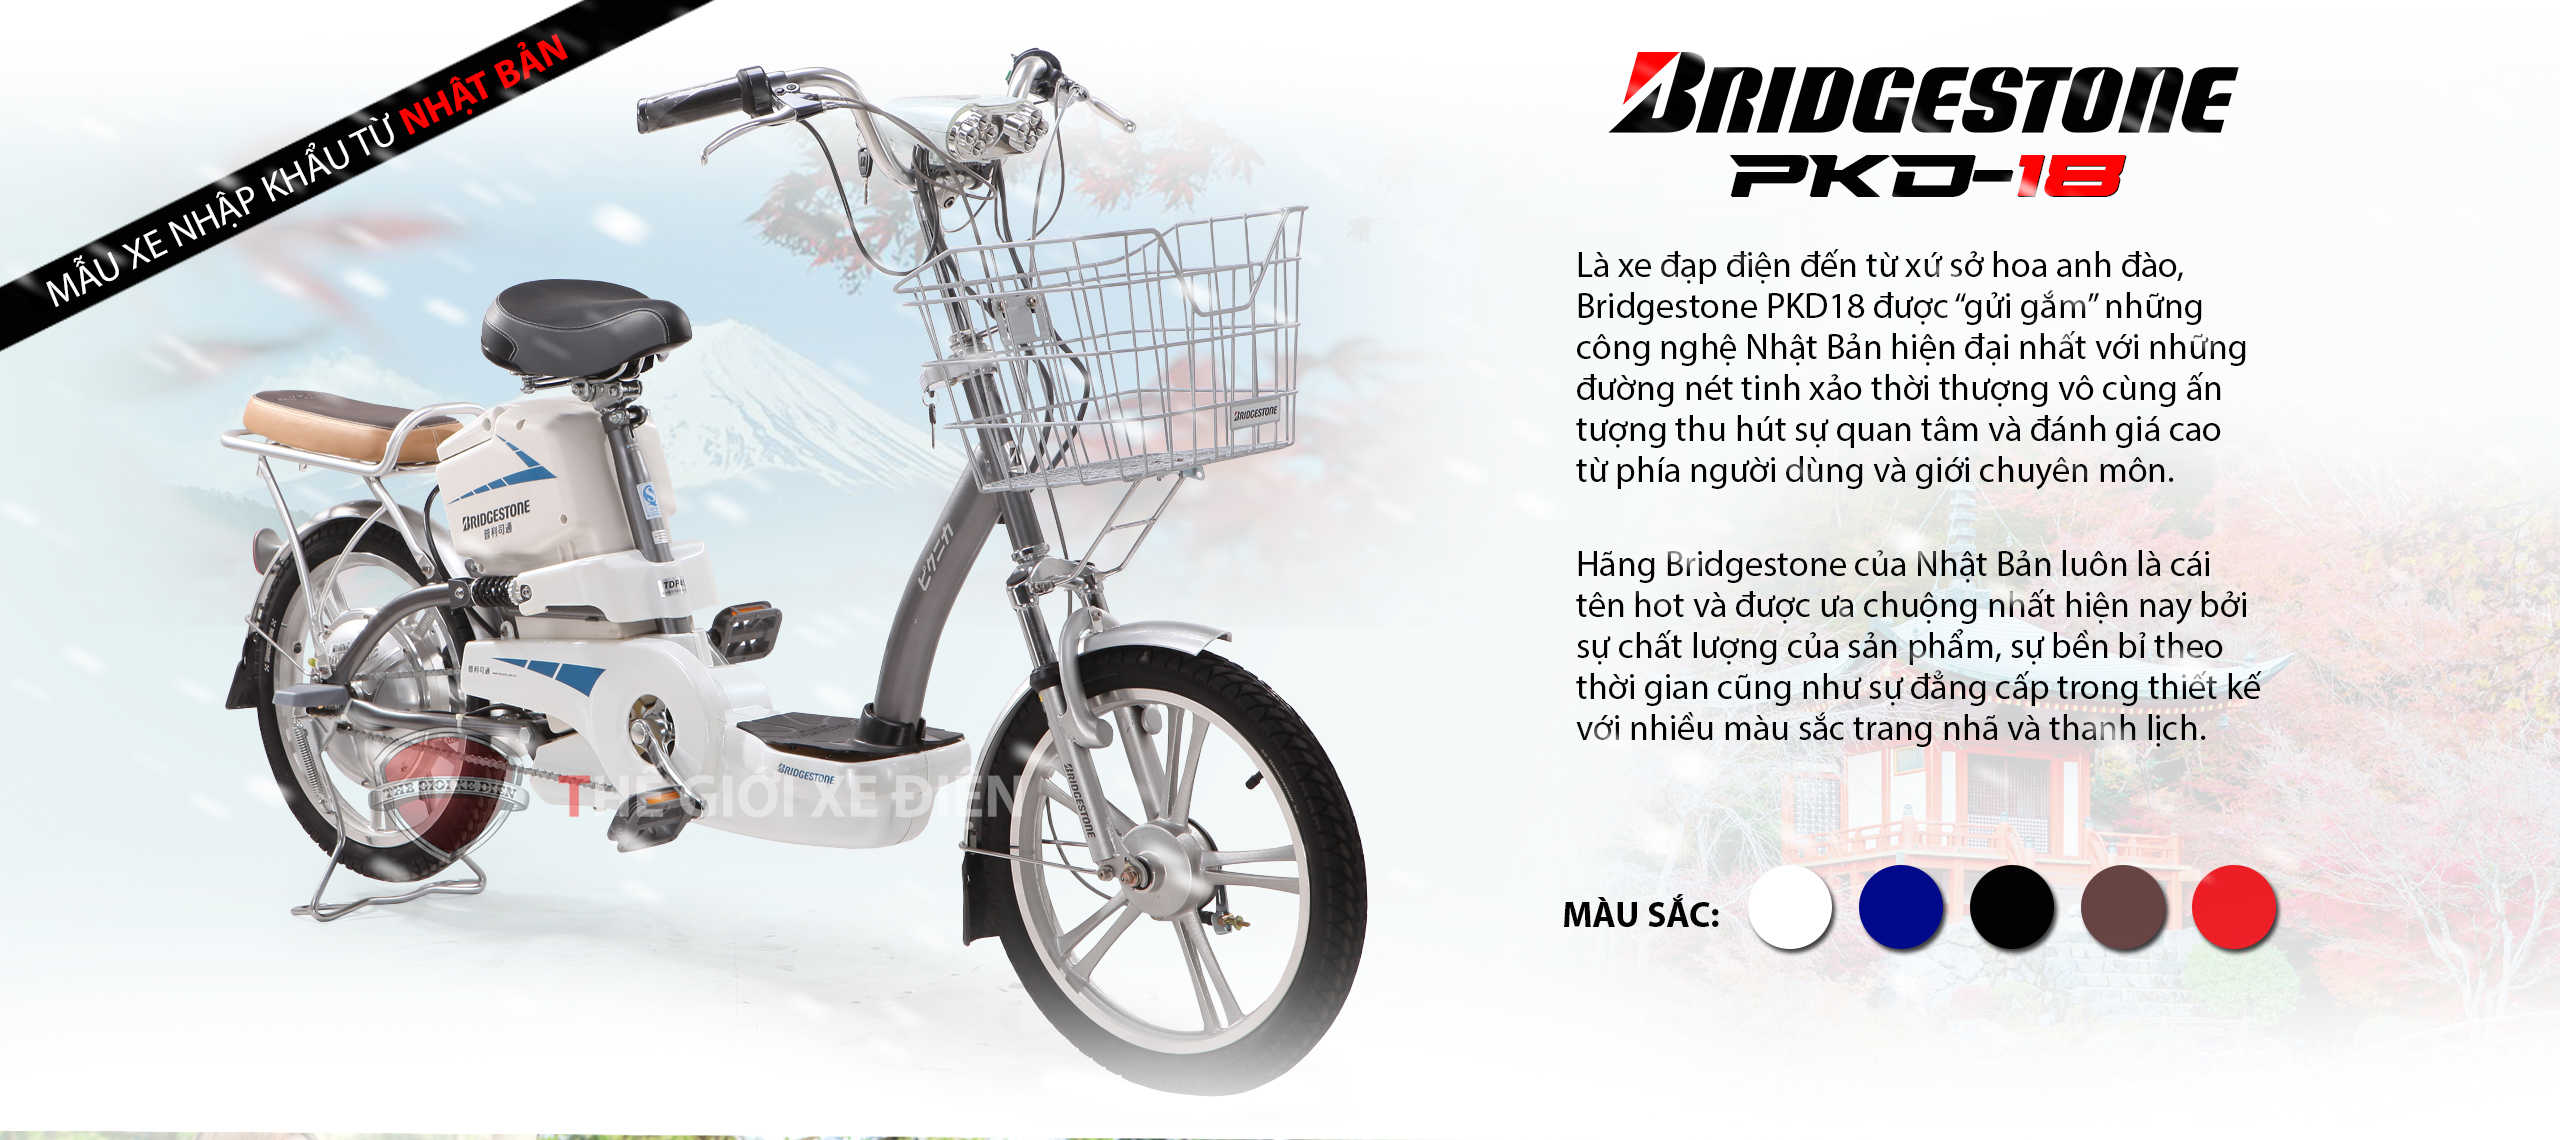 Điểm danh những mẫu xe đạp điện “Cực chất” nên mua cho người lớn tuổi